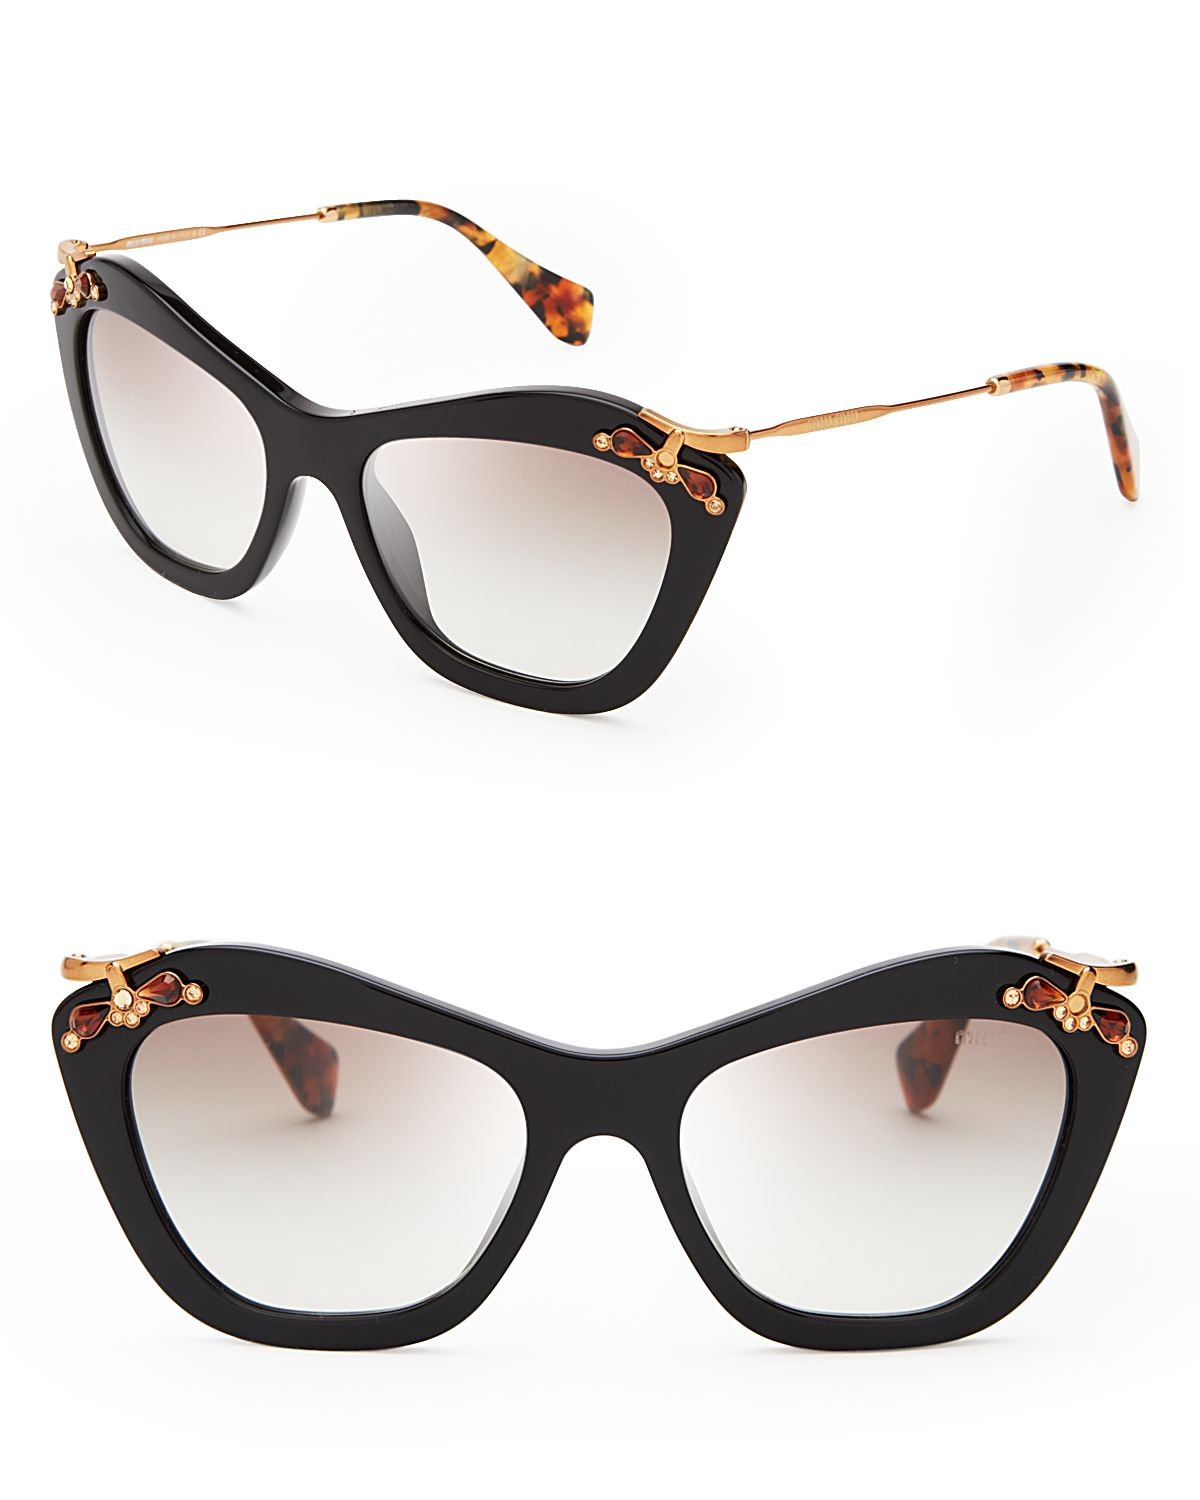 Lyst - Miu Miu Geometric Cat Eye Sunglasses in Black